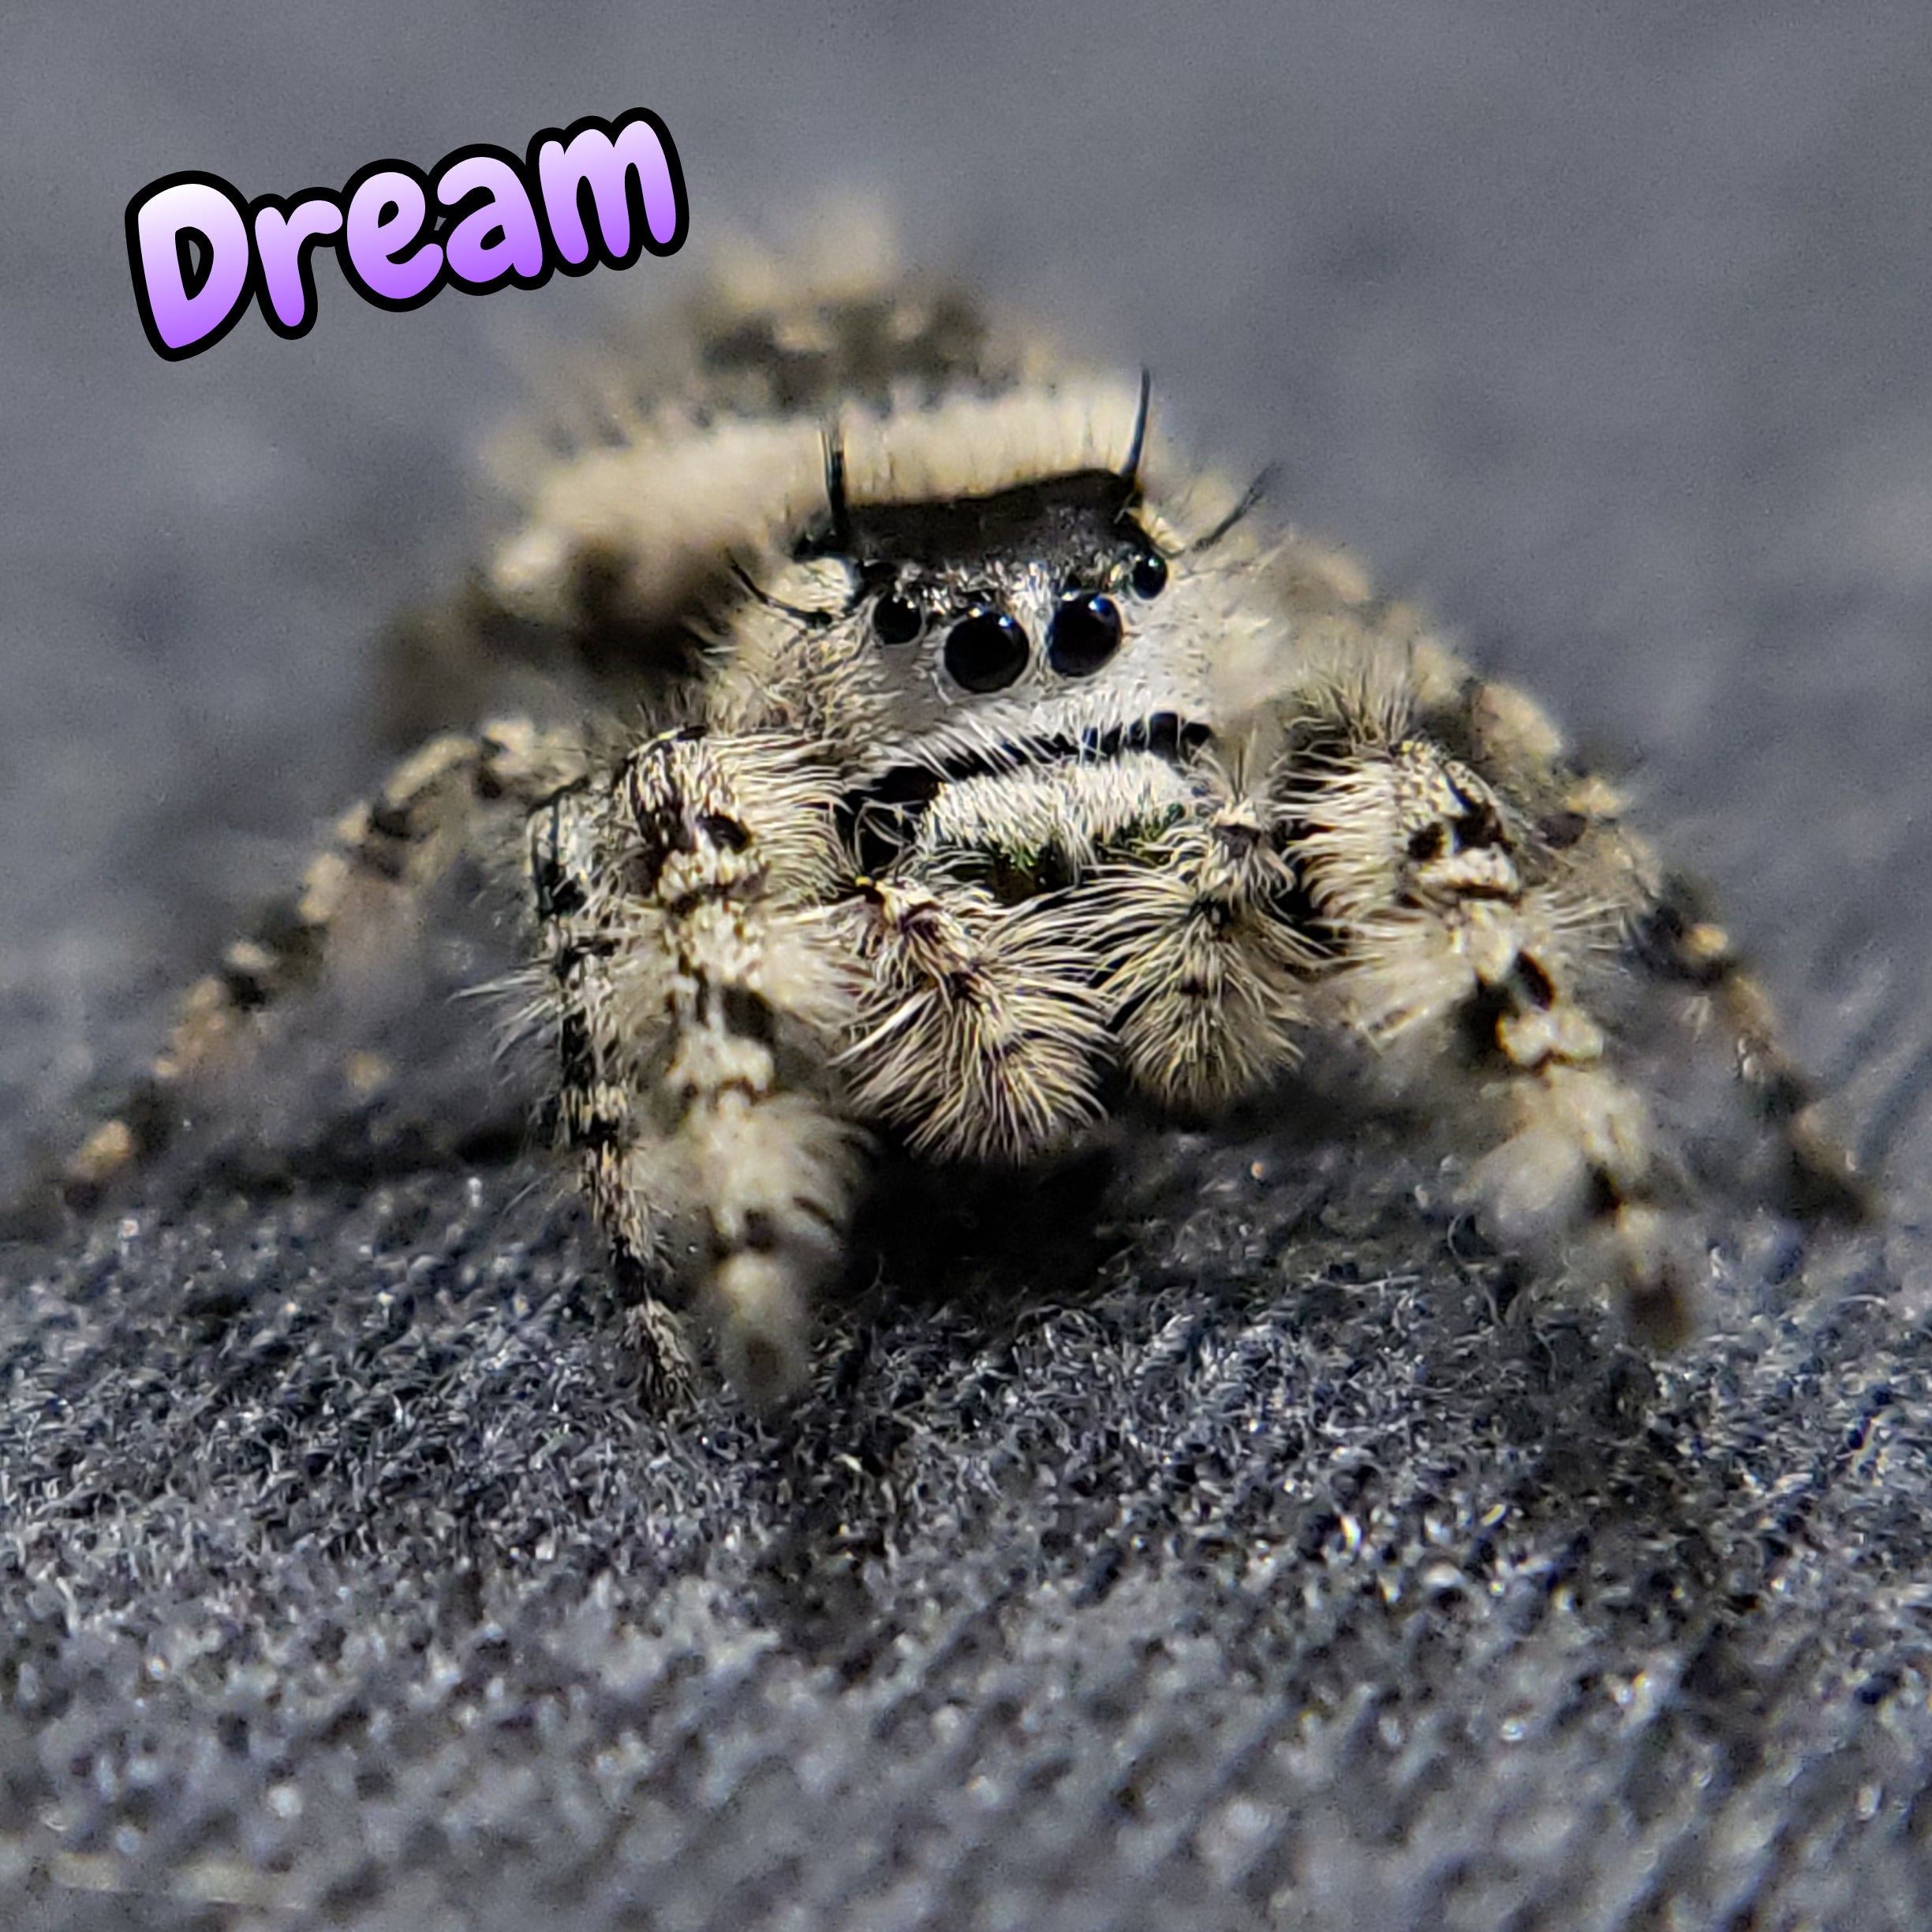 Otiosus Jumping Spider "Dream"